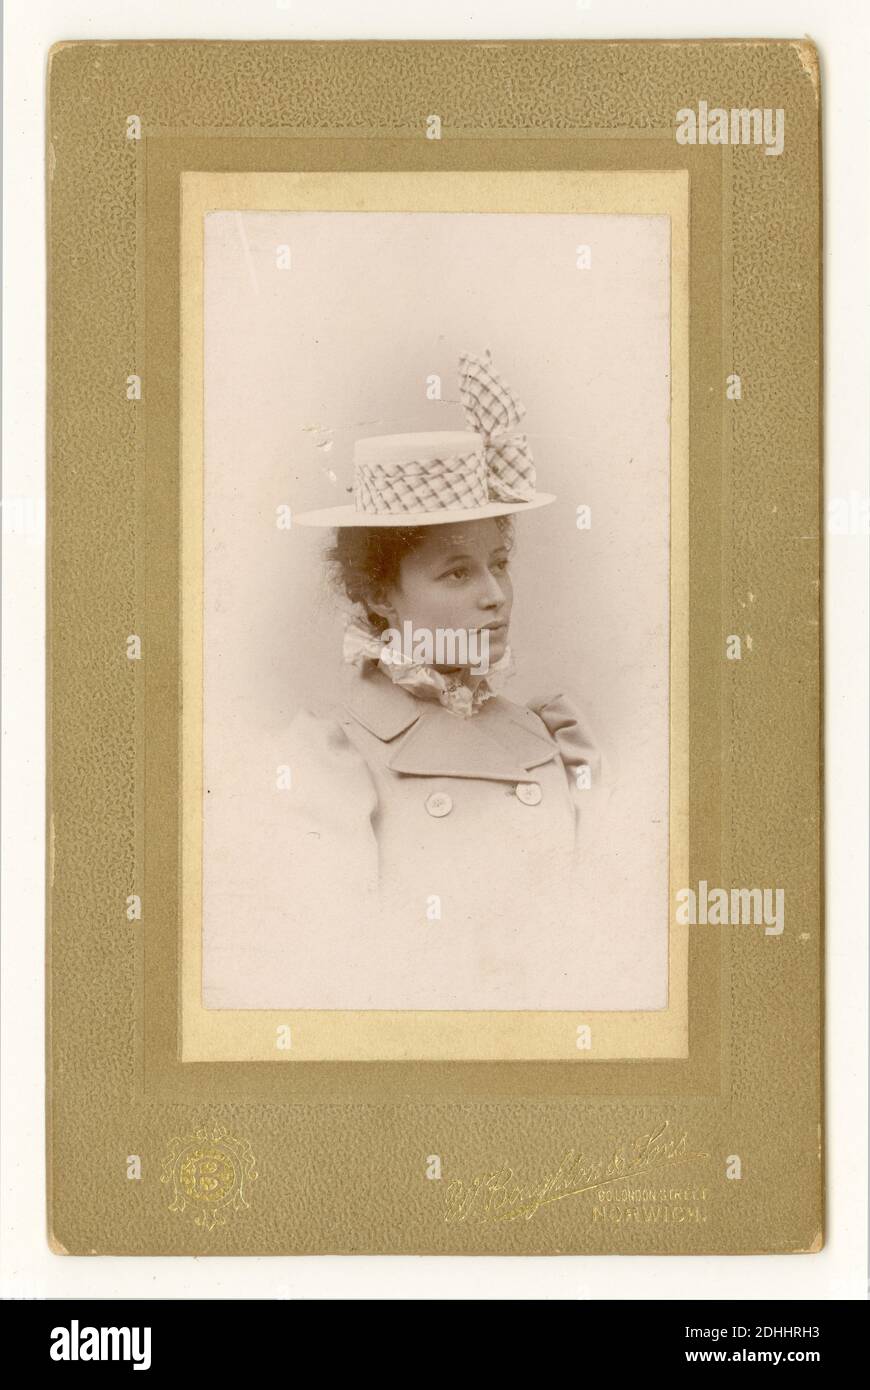 Viktorianische CDV der jungen Frau Nellie vom Juli 1899, von Boughton & Sons, 60 London St. Norwich, Großbritannien Stockfoto